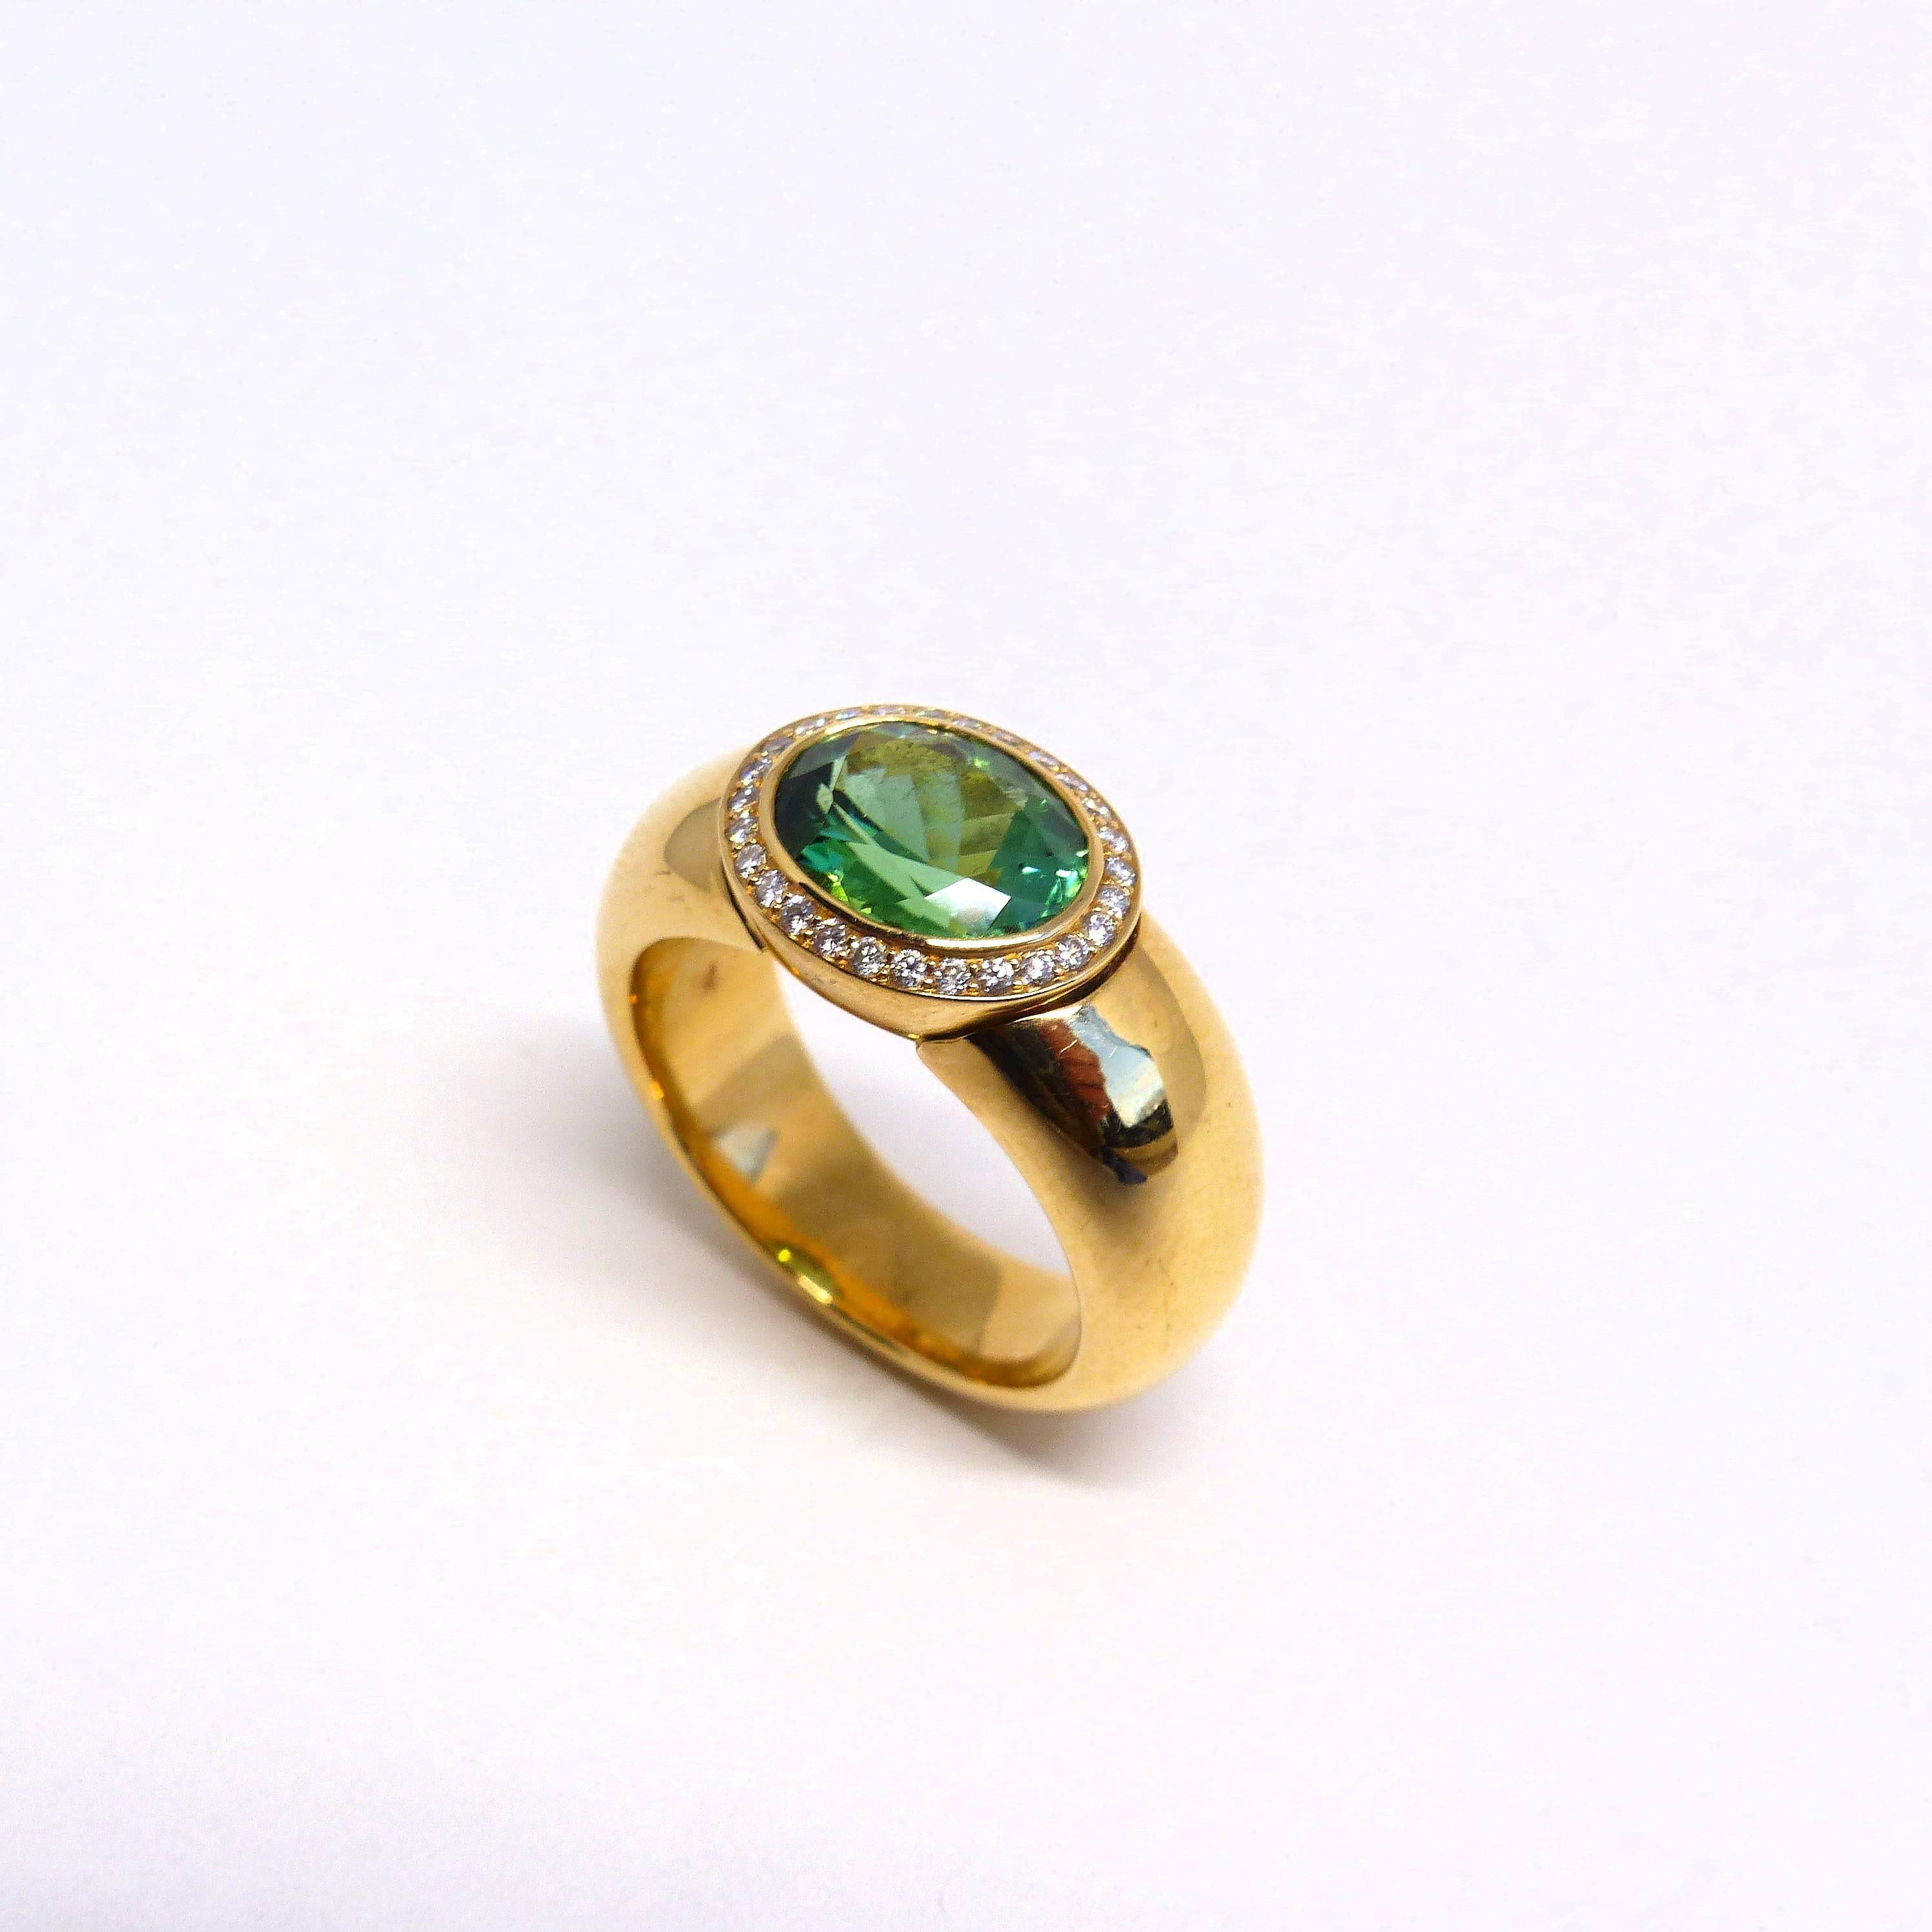 Thomas Leyser ist bekannt für seine zeitgenössischen Schmuckentwürfe unter Verwendung edler Edelsteine. 

Ring aus 18 Karat Roségold (17,84 g) mit 1x feinem grünen Turmalin (facettiert, oval, 10x8 mm, 2,68ct) + 26x Diamanten (Brillantschliff, 1 mm,